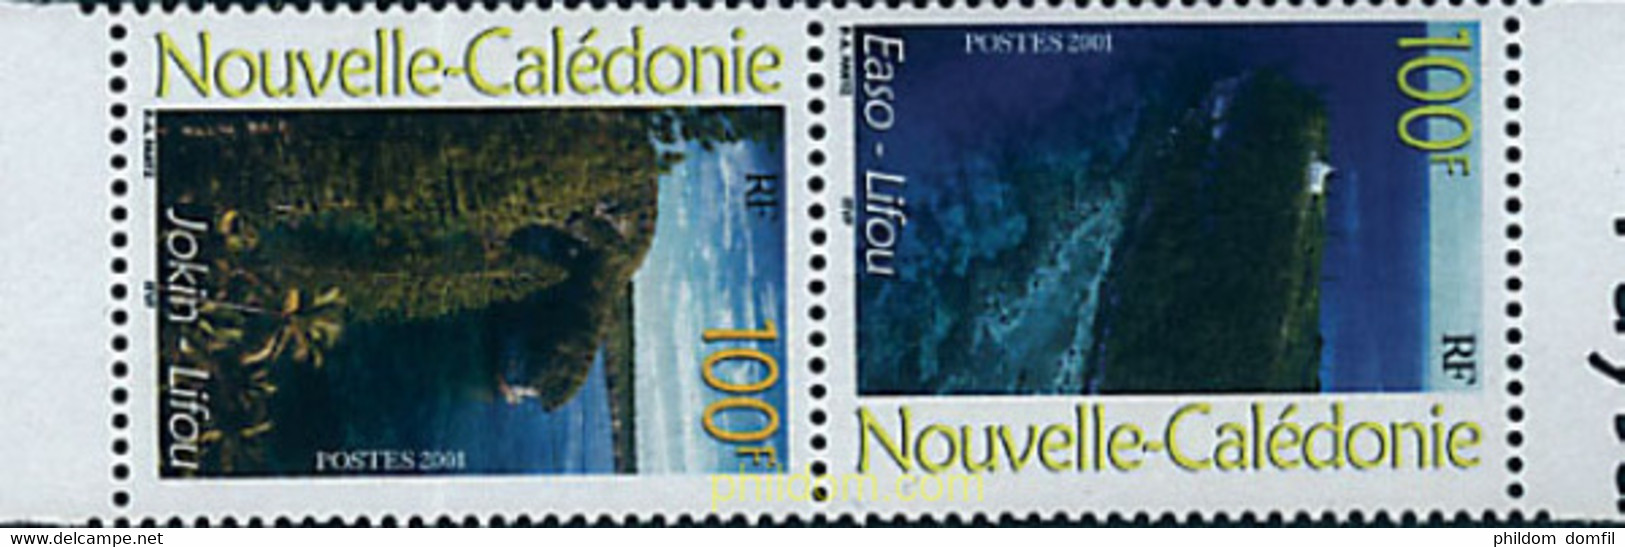 4678 MNH NUEVA CALEDONIA 2001 PAISAJES REGIONALES - Oblitérés